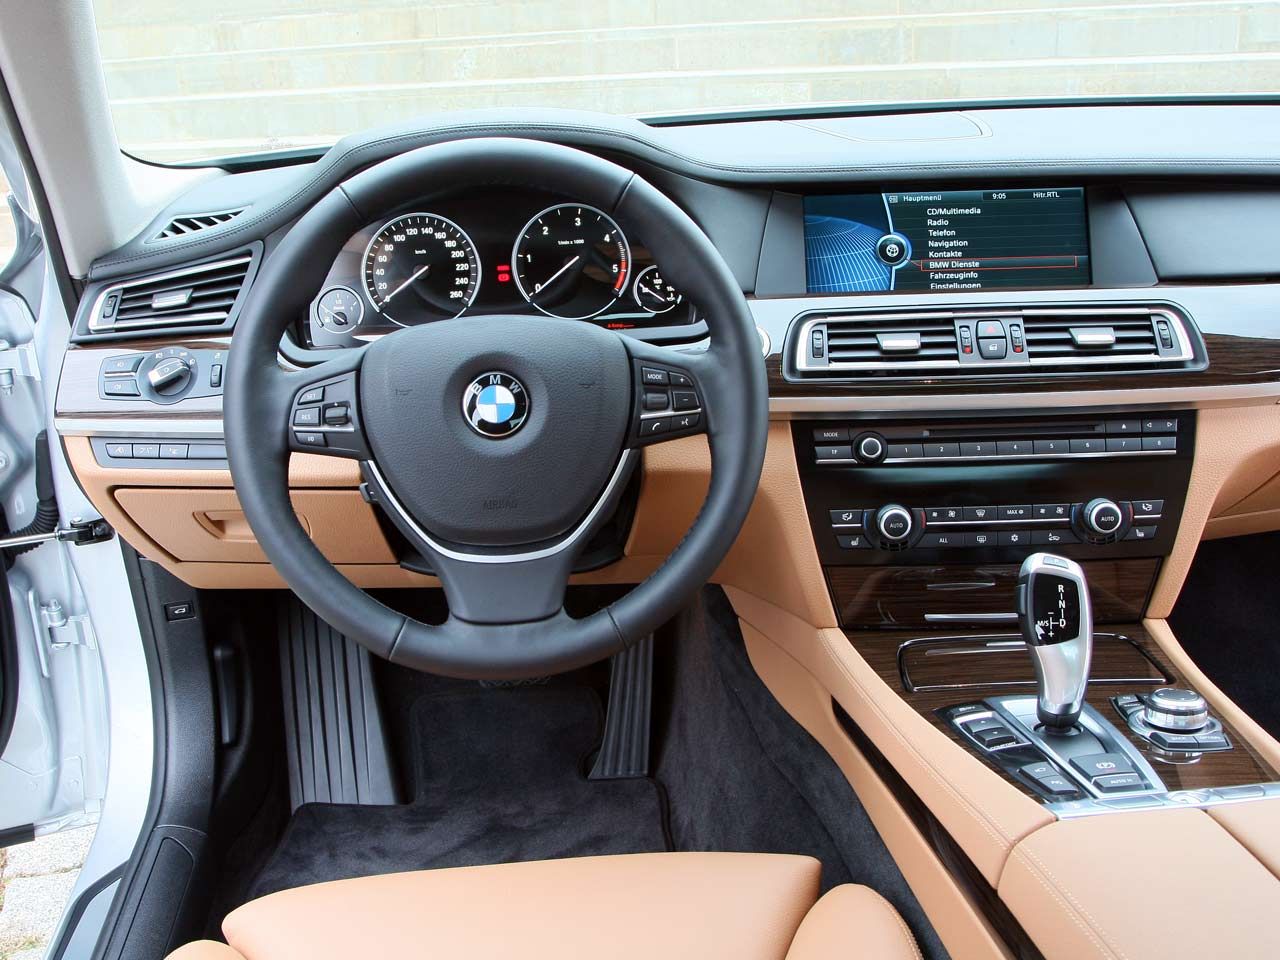 2009 BMW 730d Interior and Exterior Shots